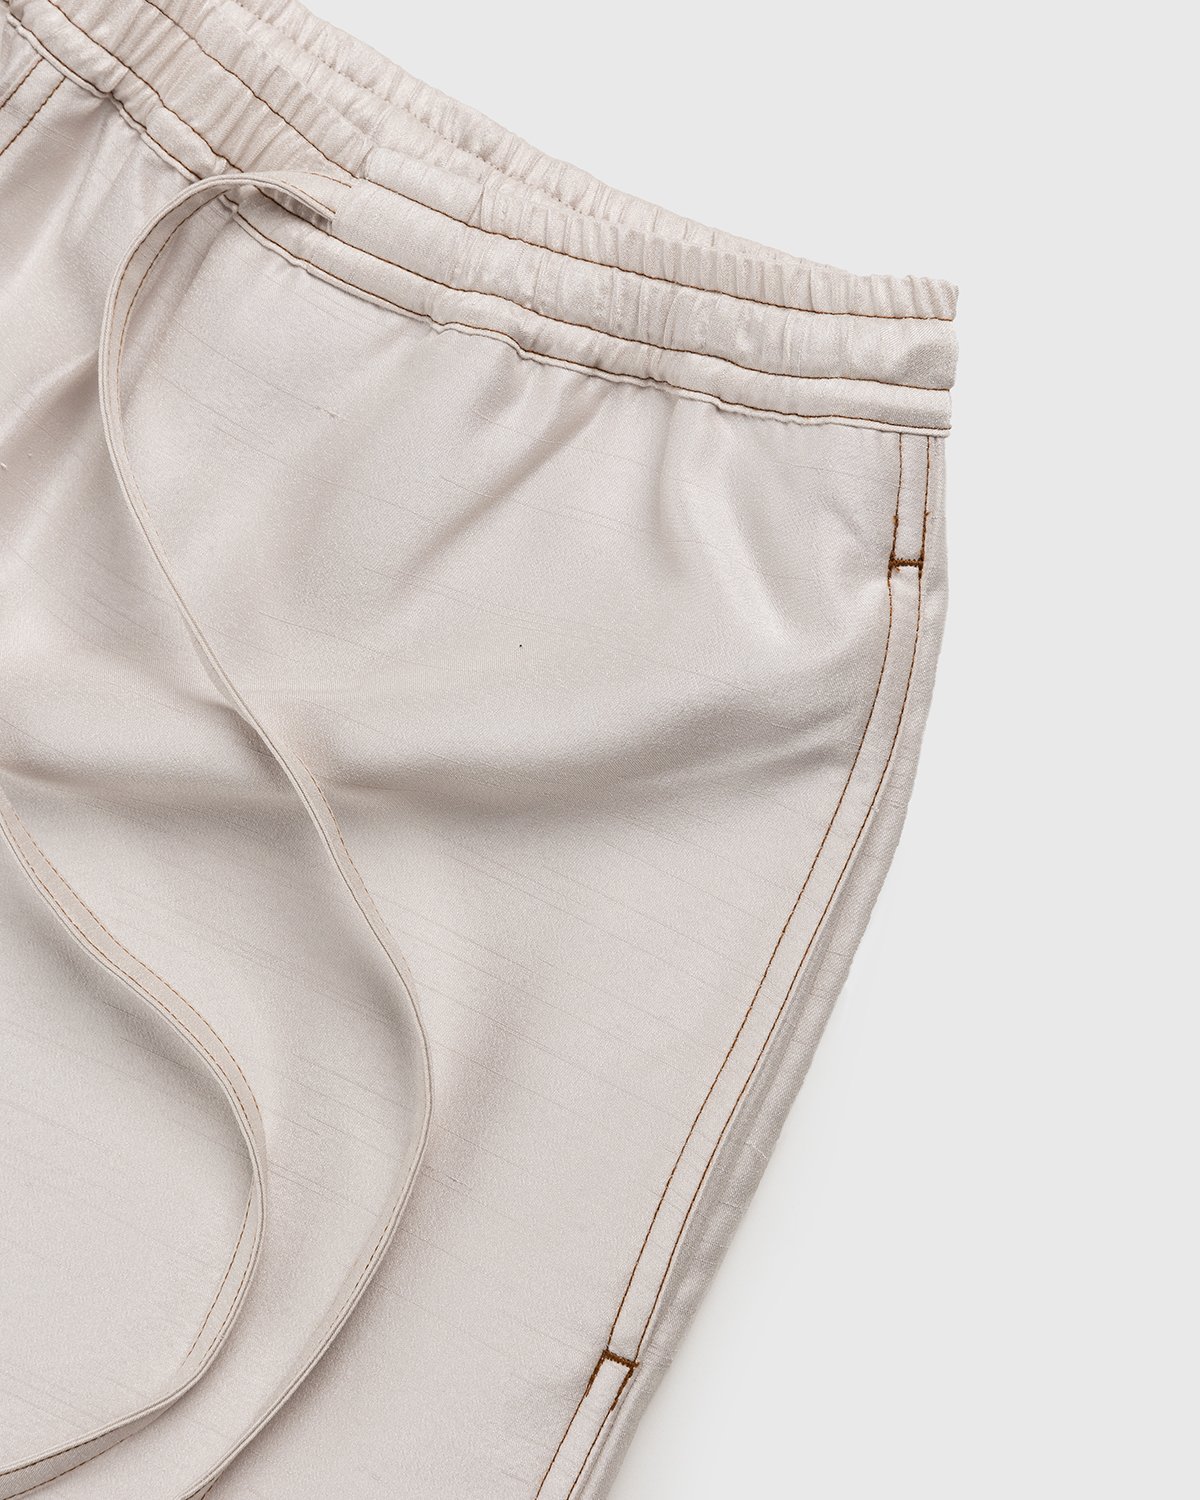 Acne Studios - Drawstring Shorts Light Beige - Clothing - Beige - Image 5